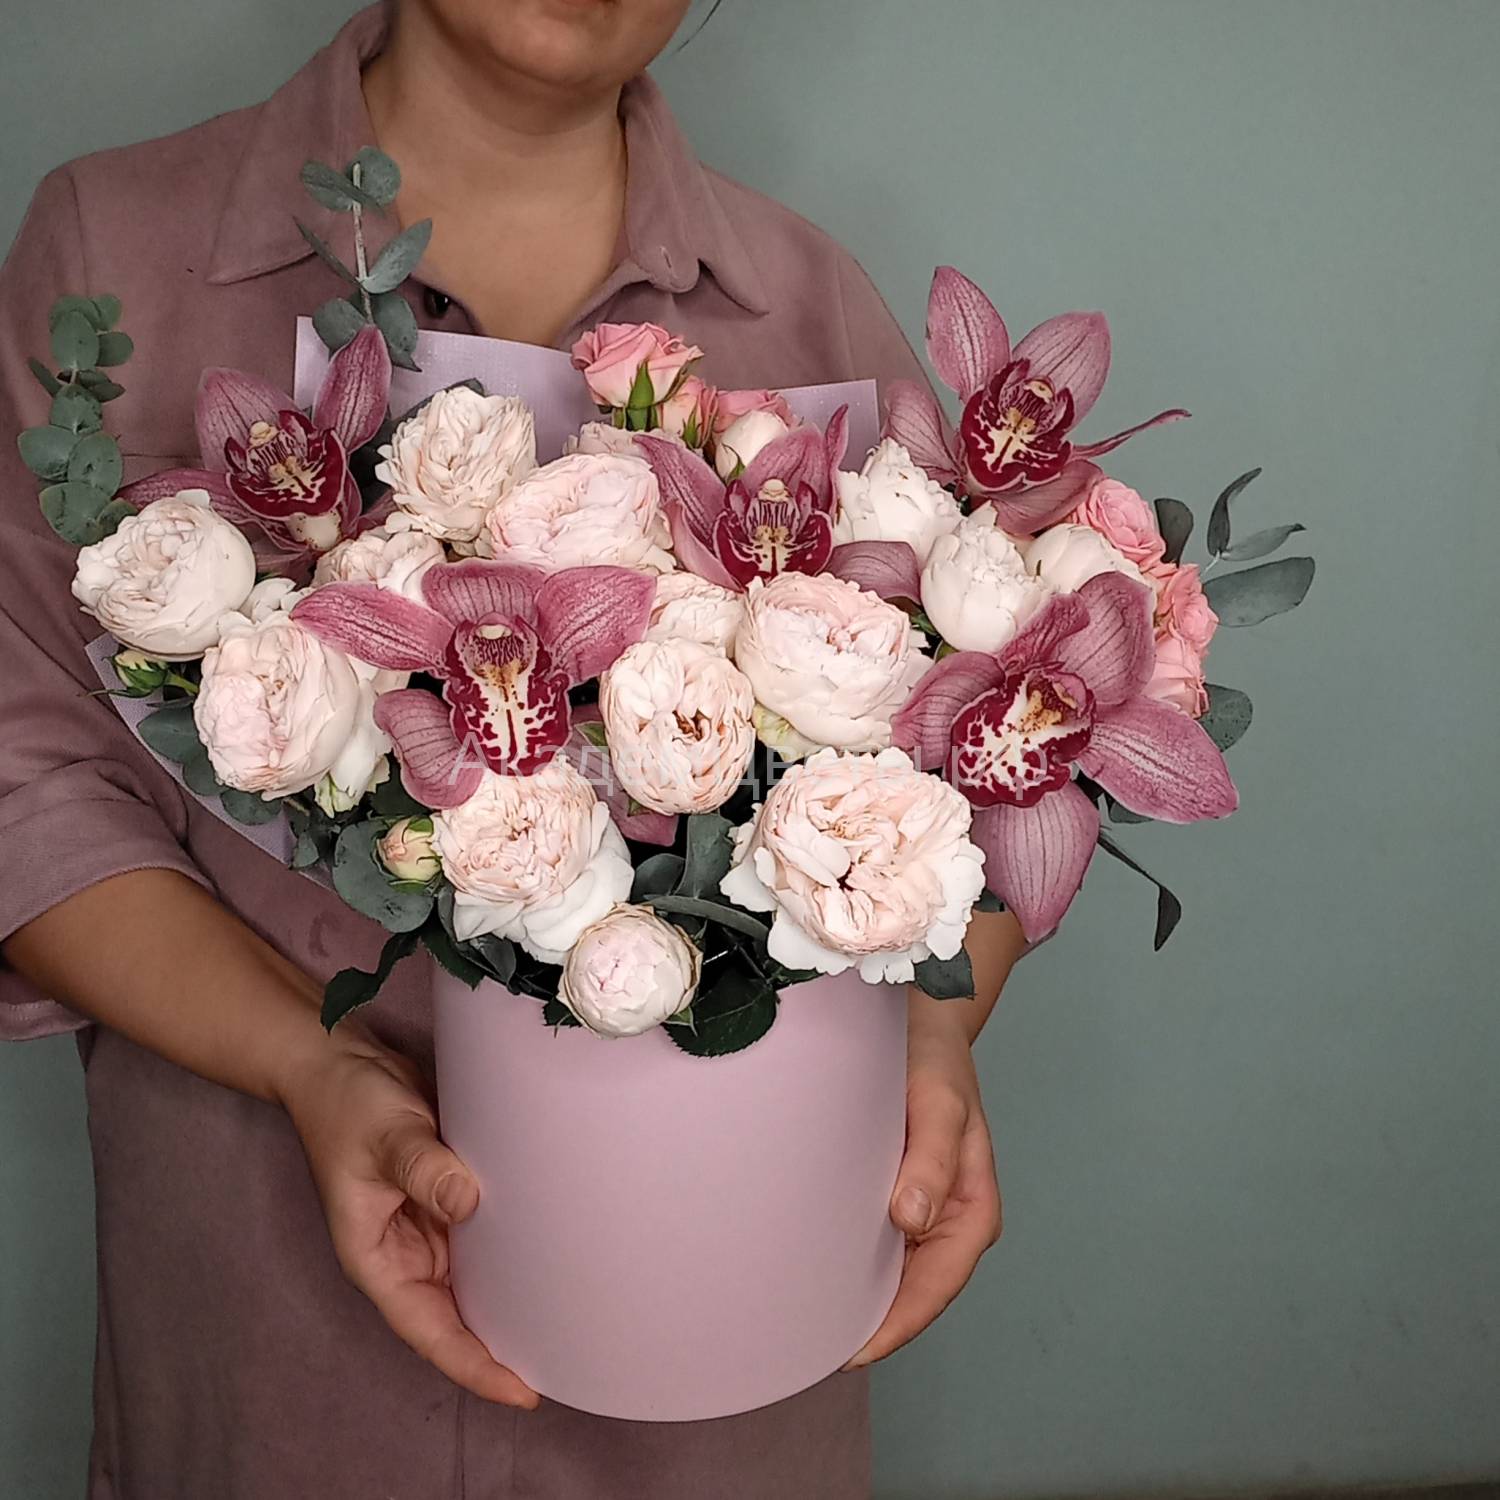 Орхидея и пион роза кустовая купить в Новосибирске (Академгородок) -  цветочный интернет магазин АкадемЦветы.РФ